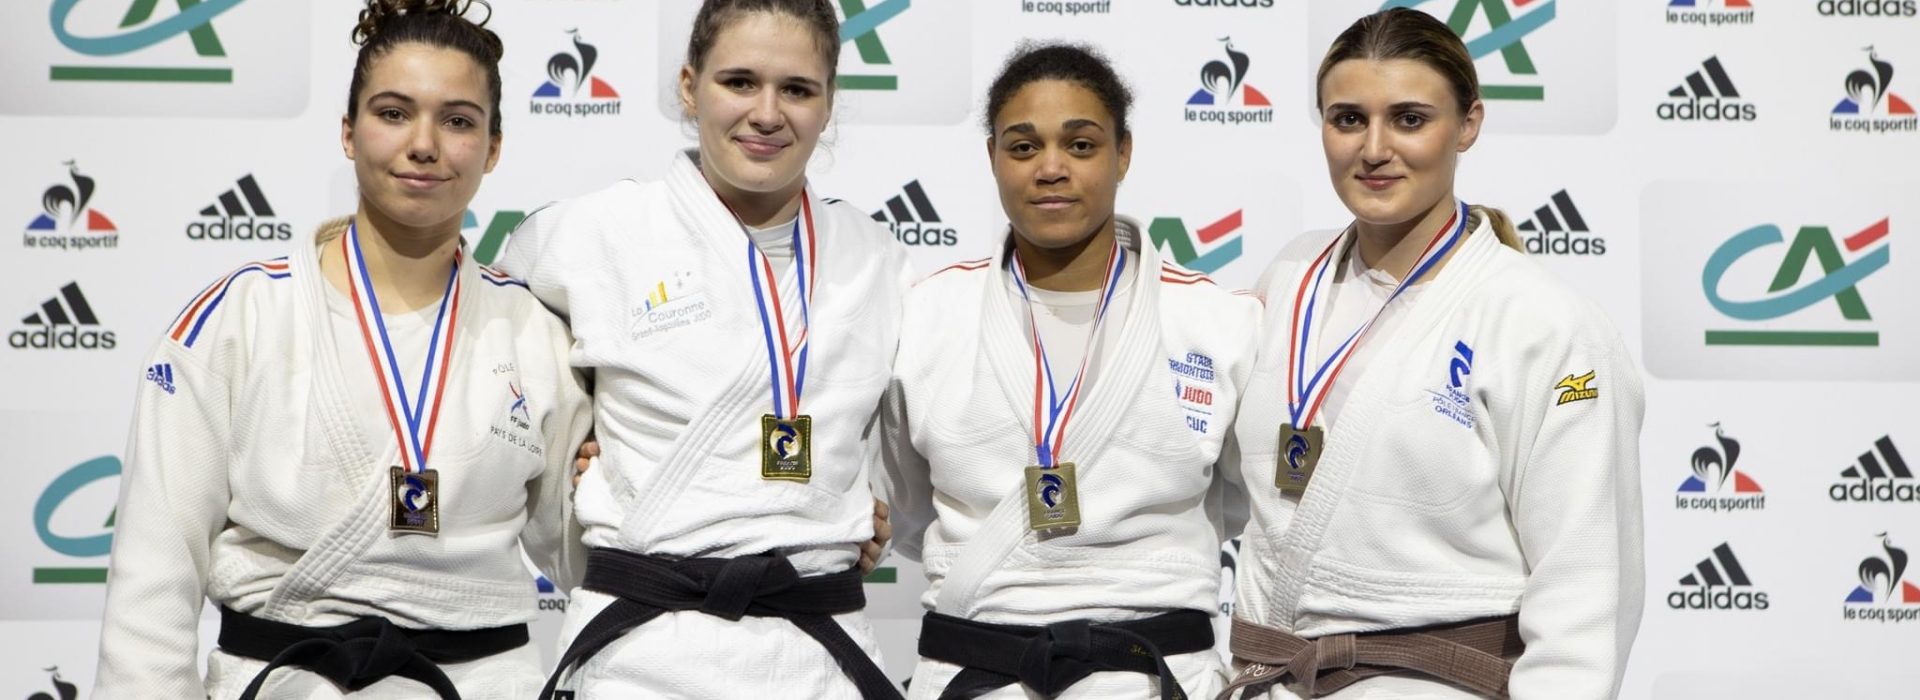 Championnat de France 1ère division junior de judo